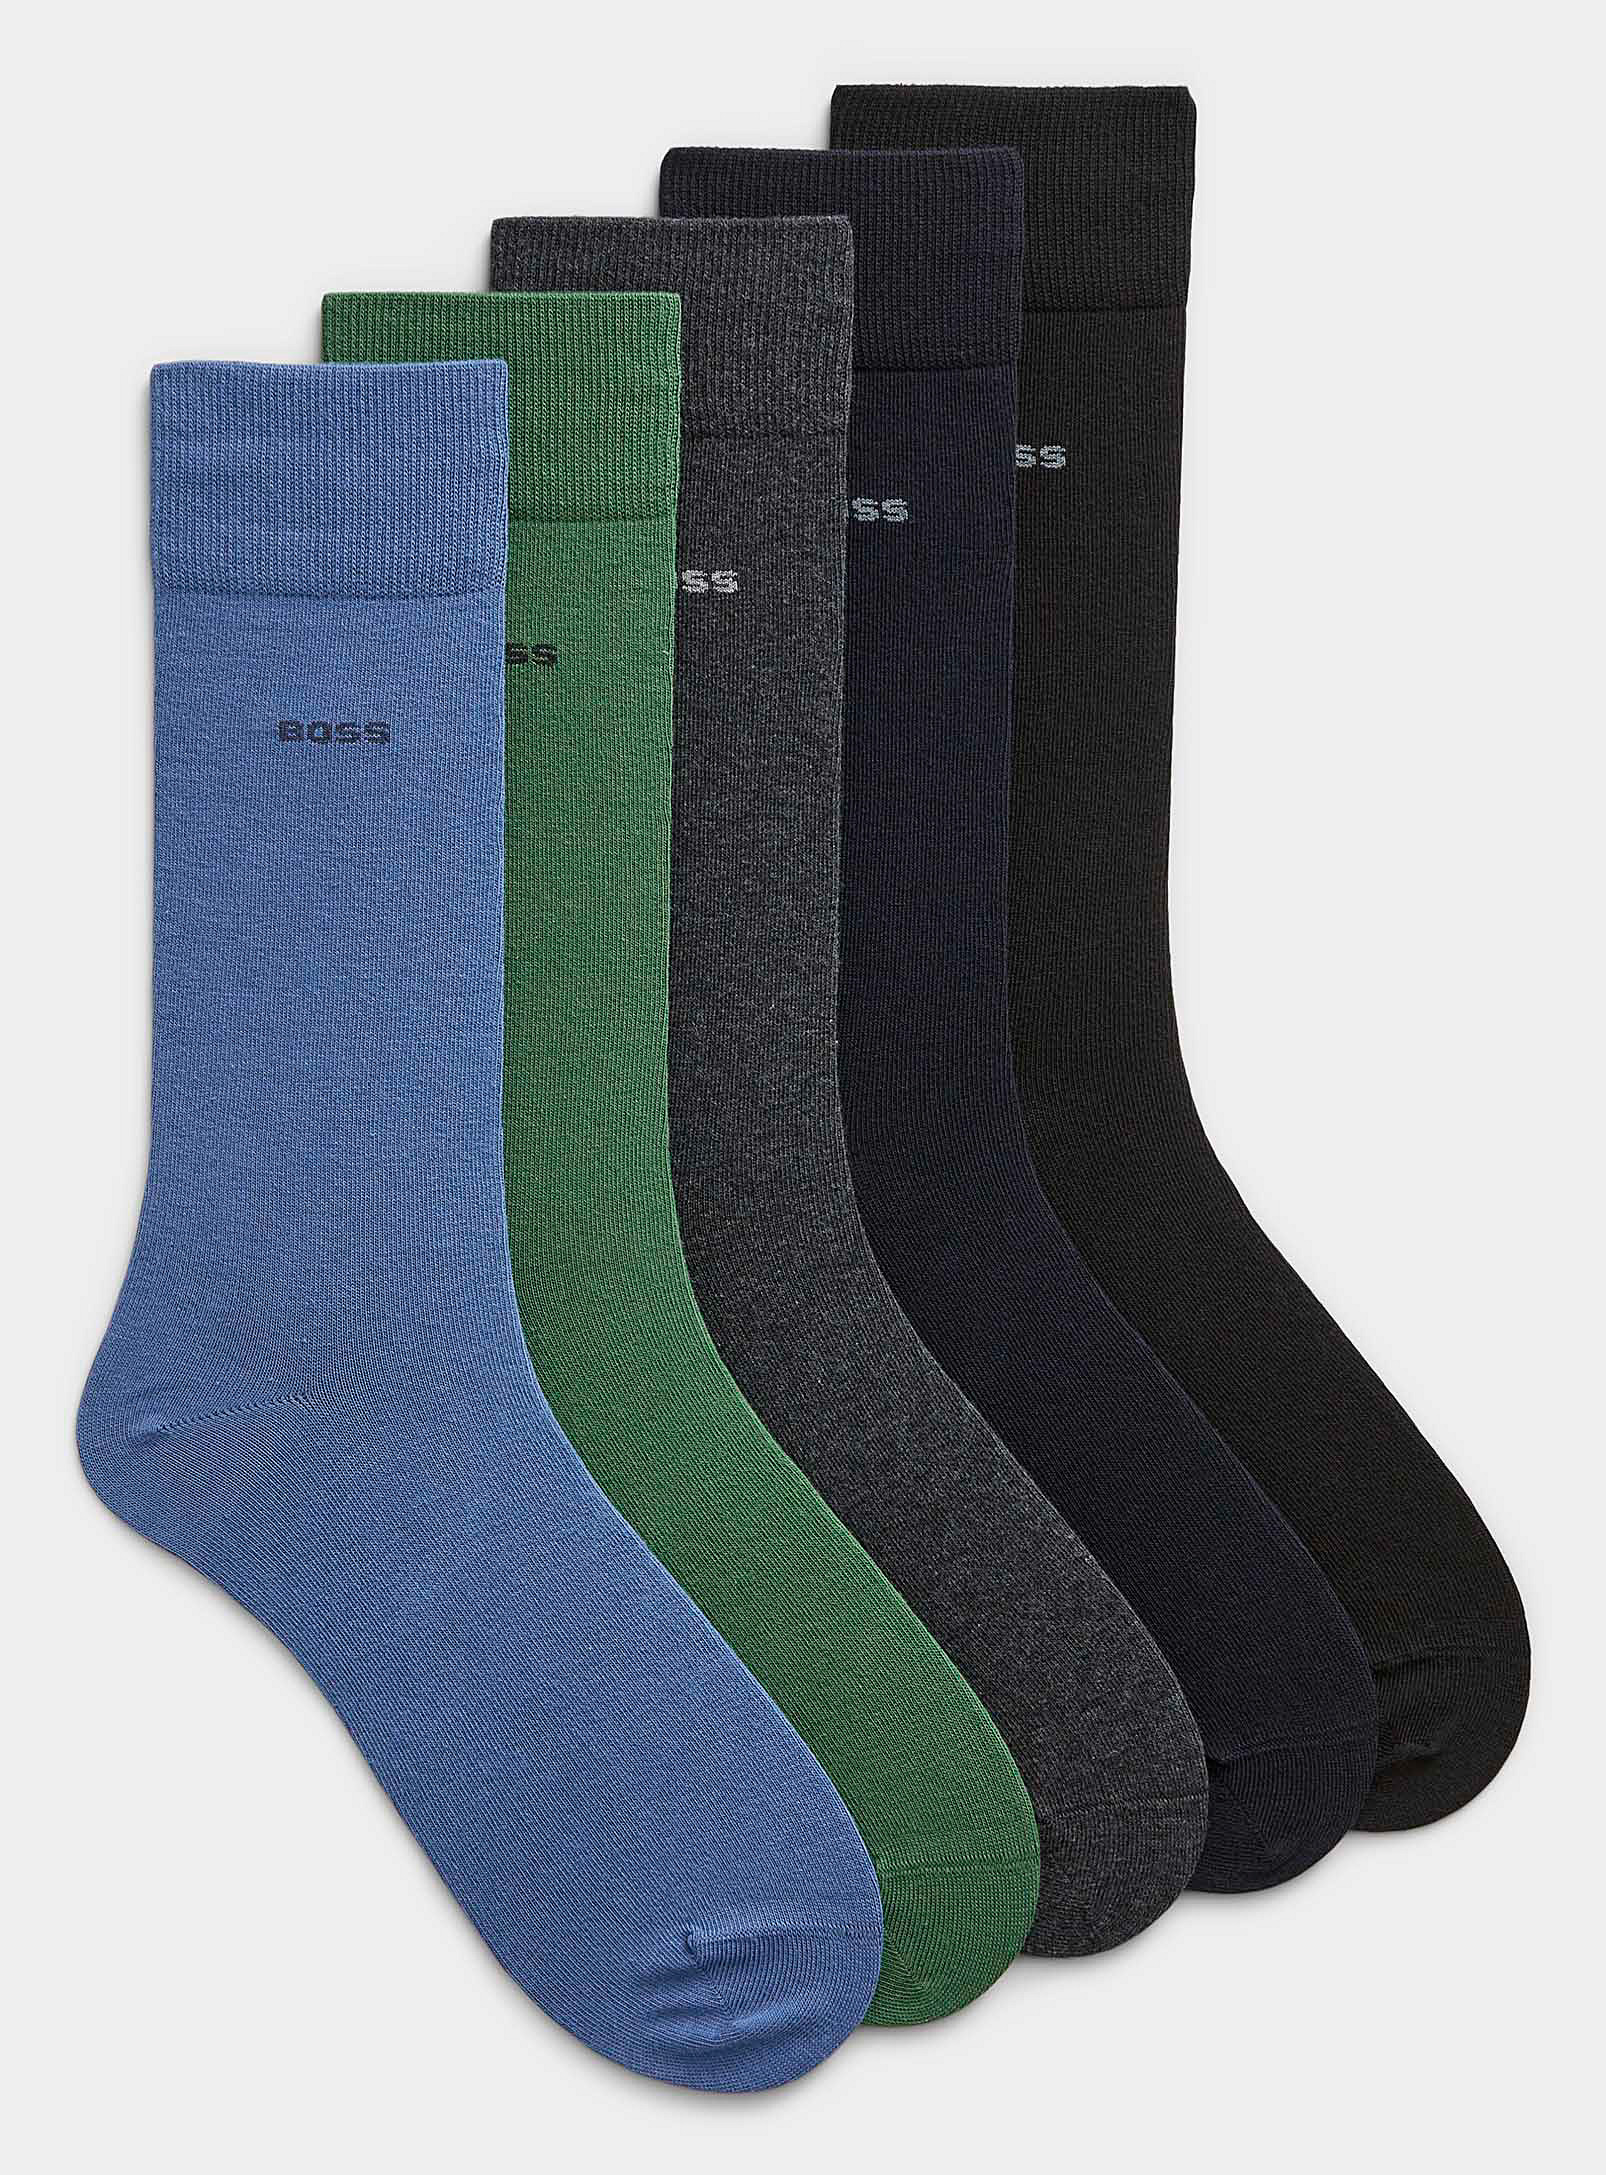 BOSS - Les chaussettes habillées neutres et colorées Emballage de 5